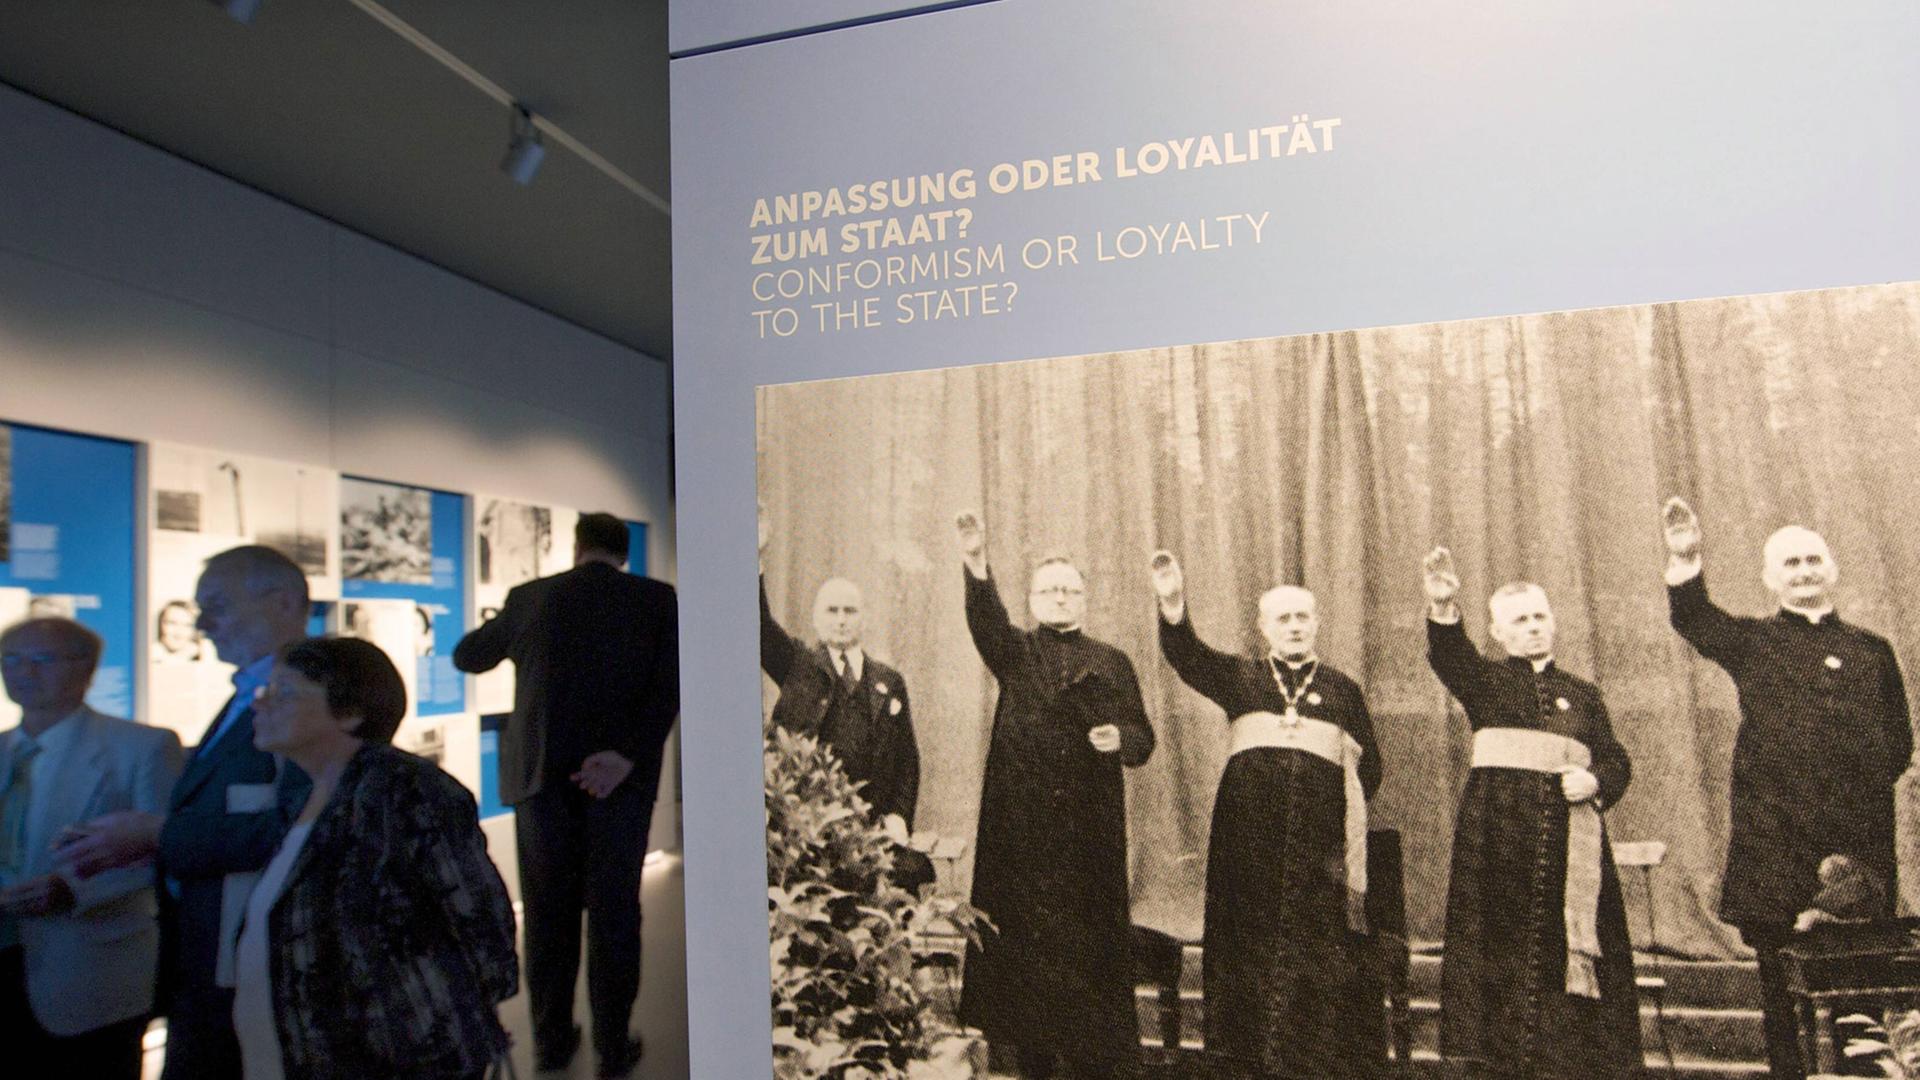 Ein Bild, auf dem kirchliche Würdenträger gezeigt werden, die die Hand zum Hitlergruß heben.